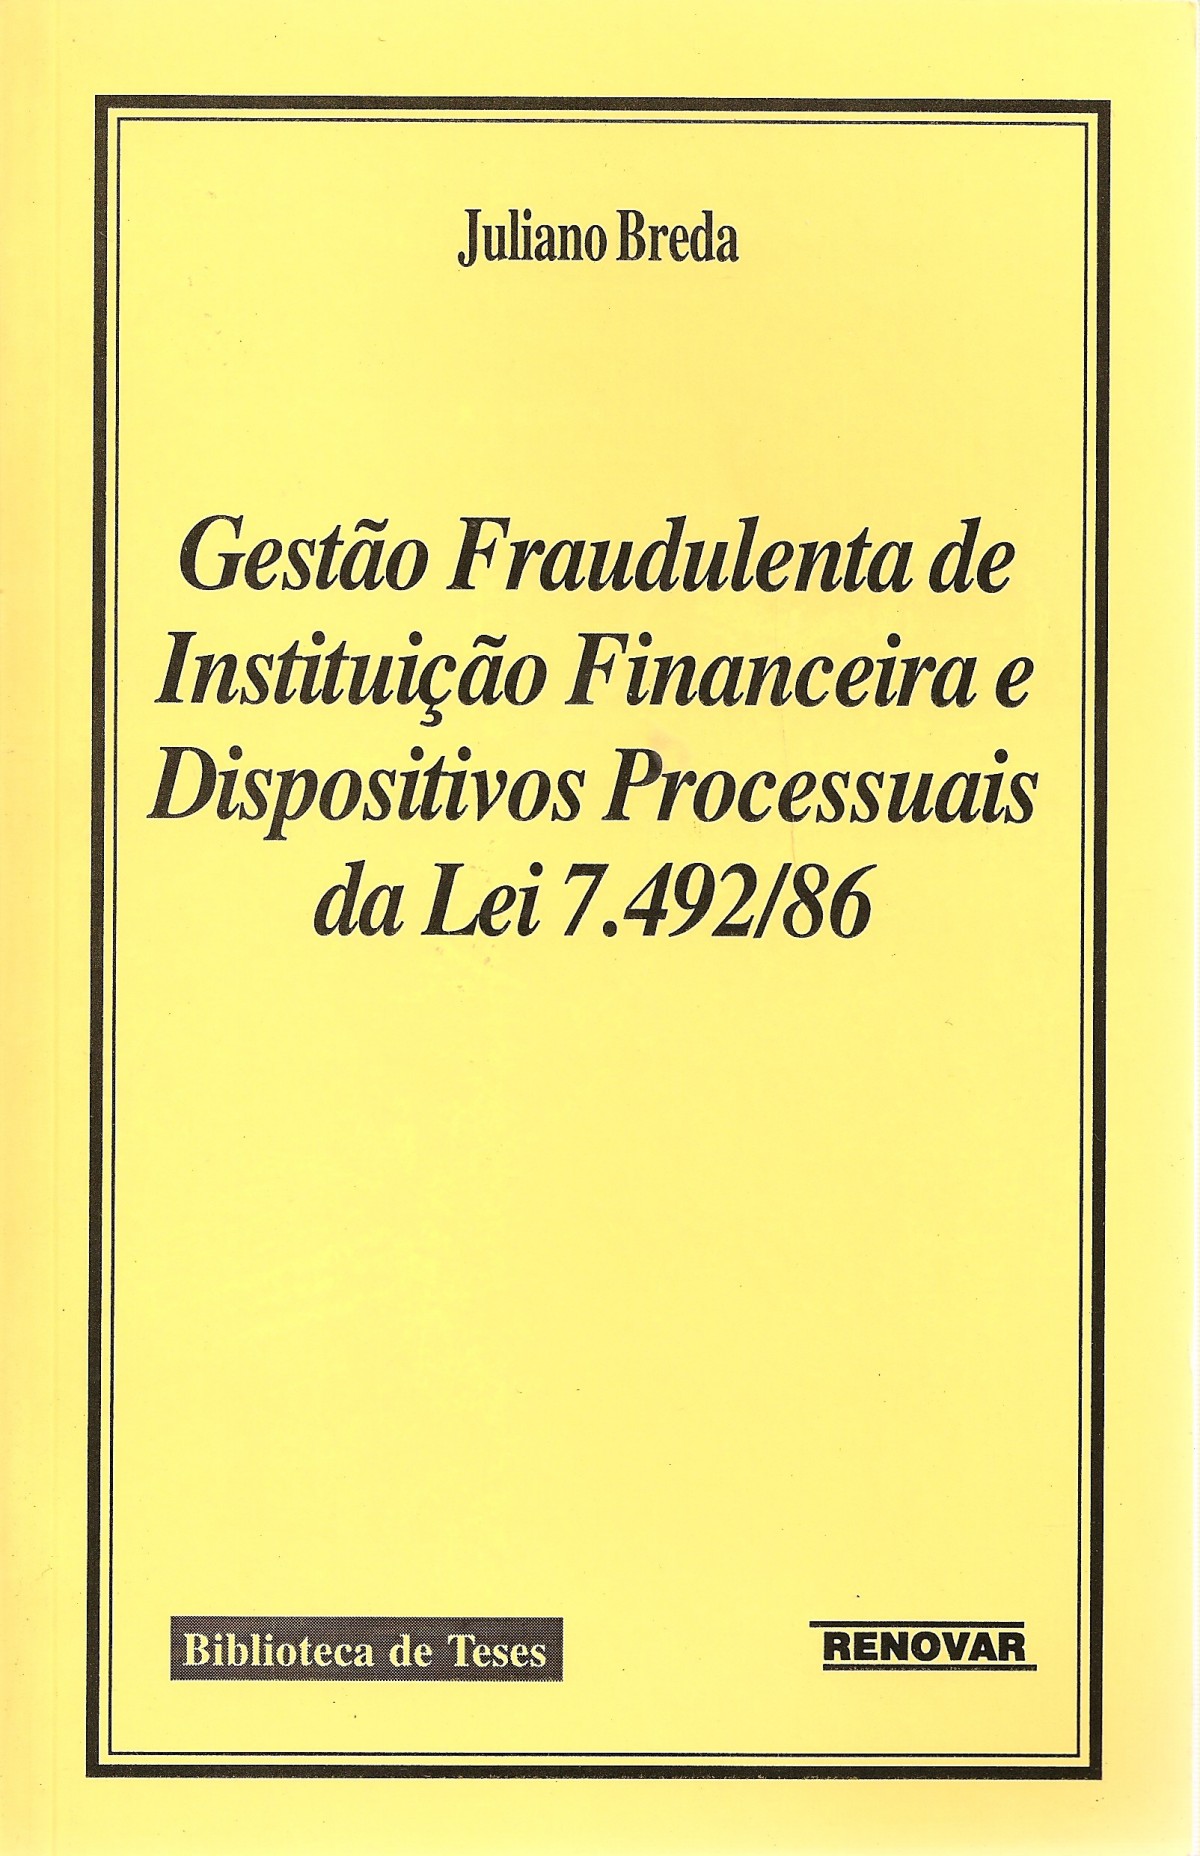 Foto 1 - Gestão Fraudulenta de Instituição Financeira e Dispositivos Processuais da Lei 7.492/86